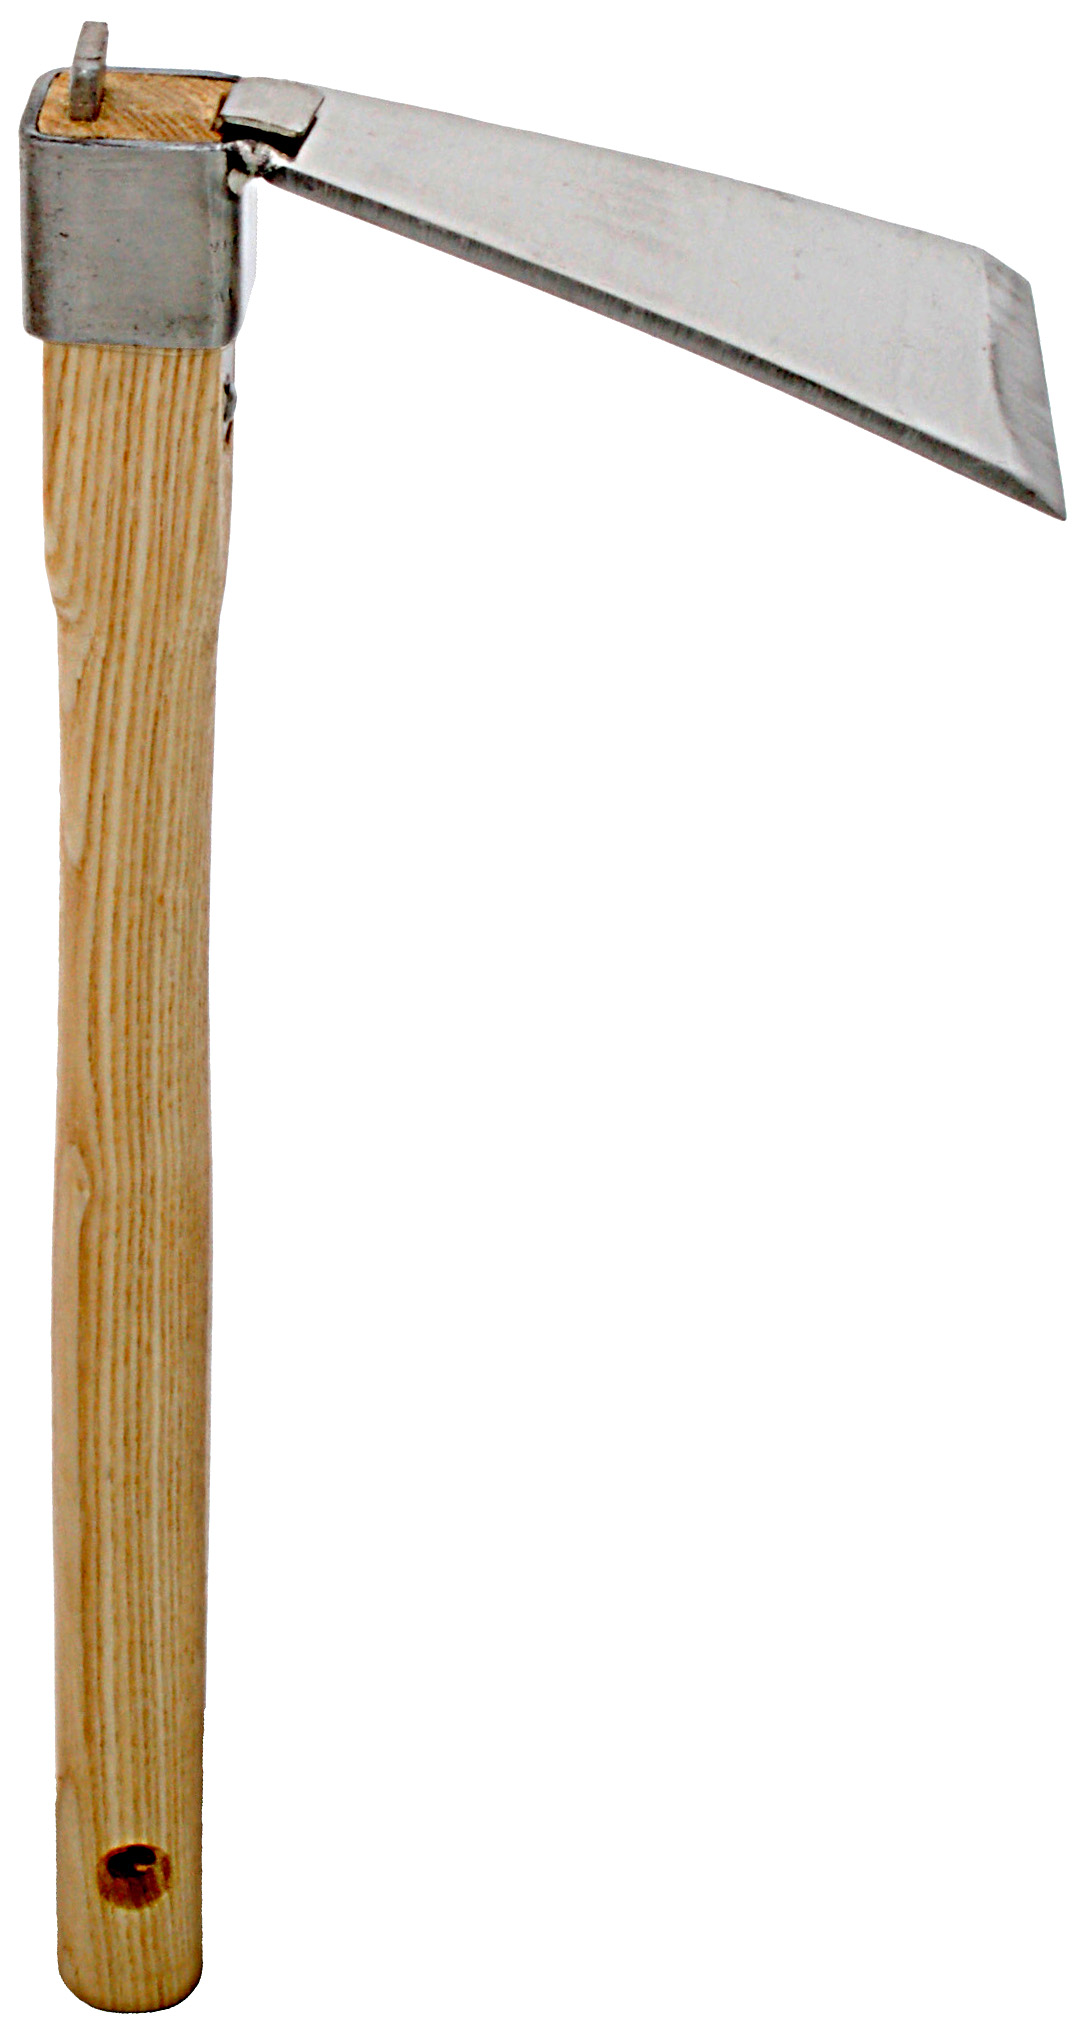 Zenport Garden Hoe J6-02 Hoe 5-Inch by 3.25-Inch Stainless Steel Blade Head